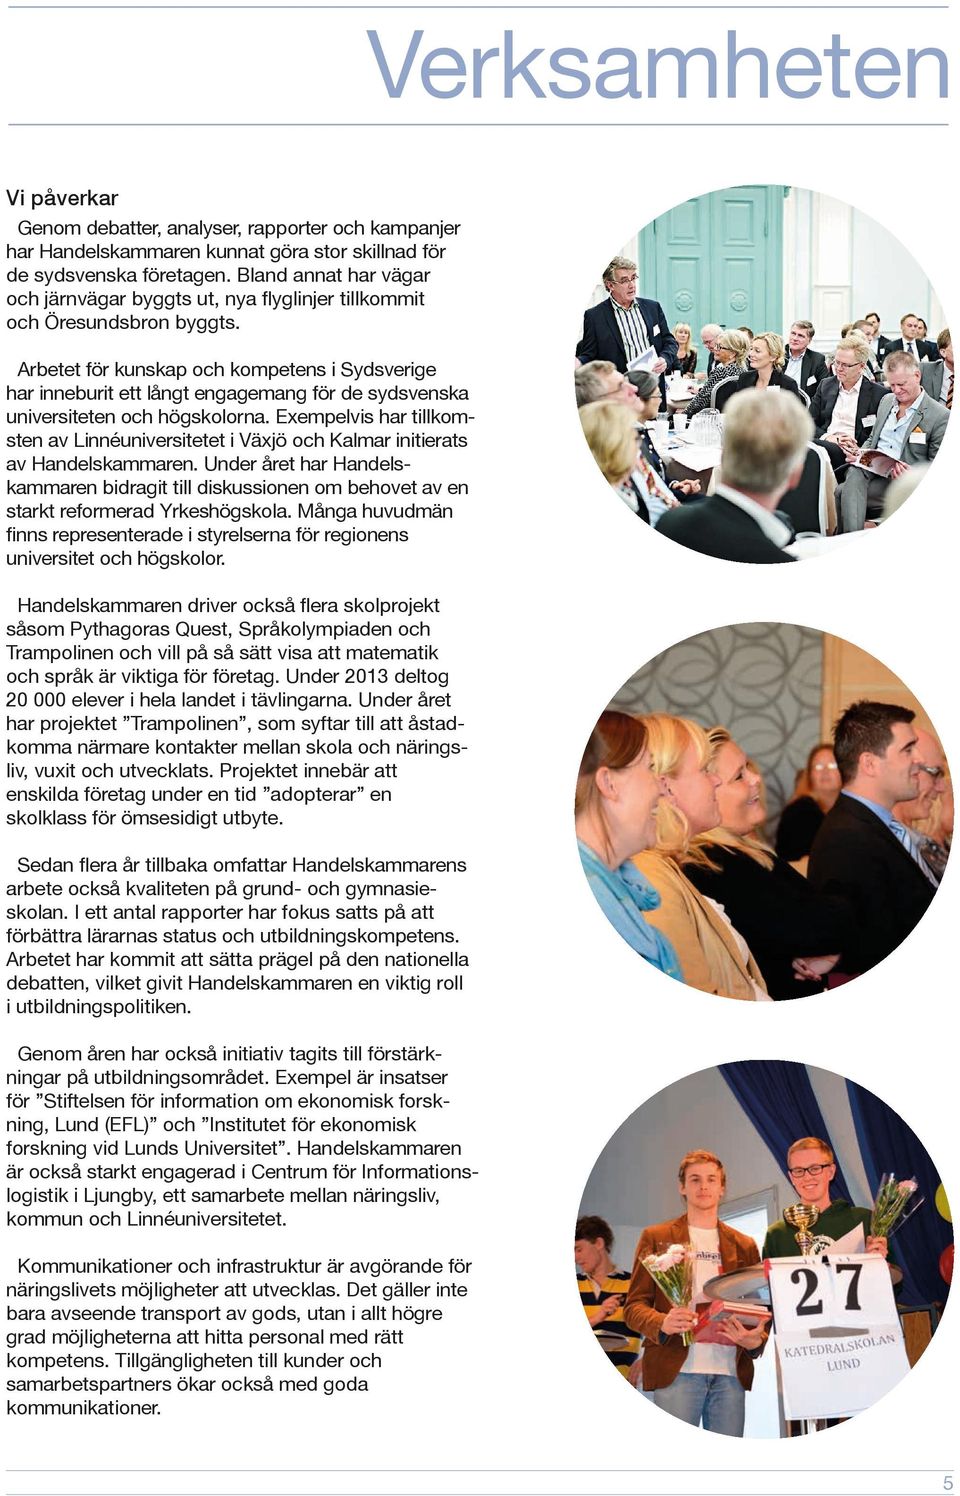 Arbetet för kunskap och kompetens i Sydsverige har inneburit ett långt engagemang för de sydsvenska universiteten och högskolorna.